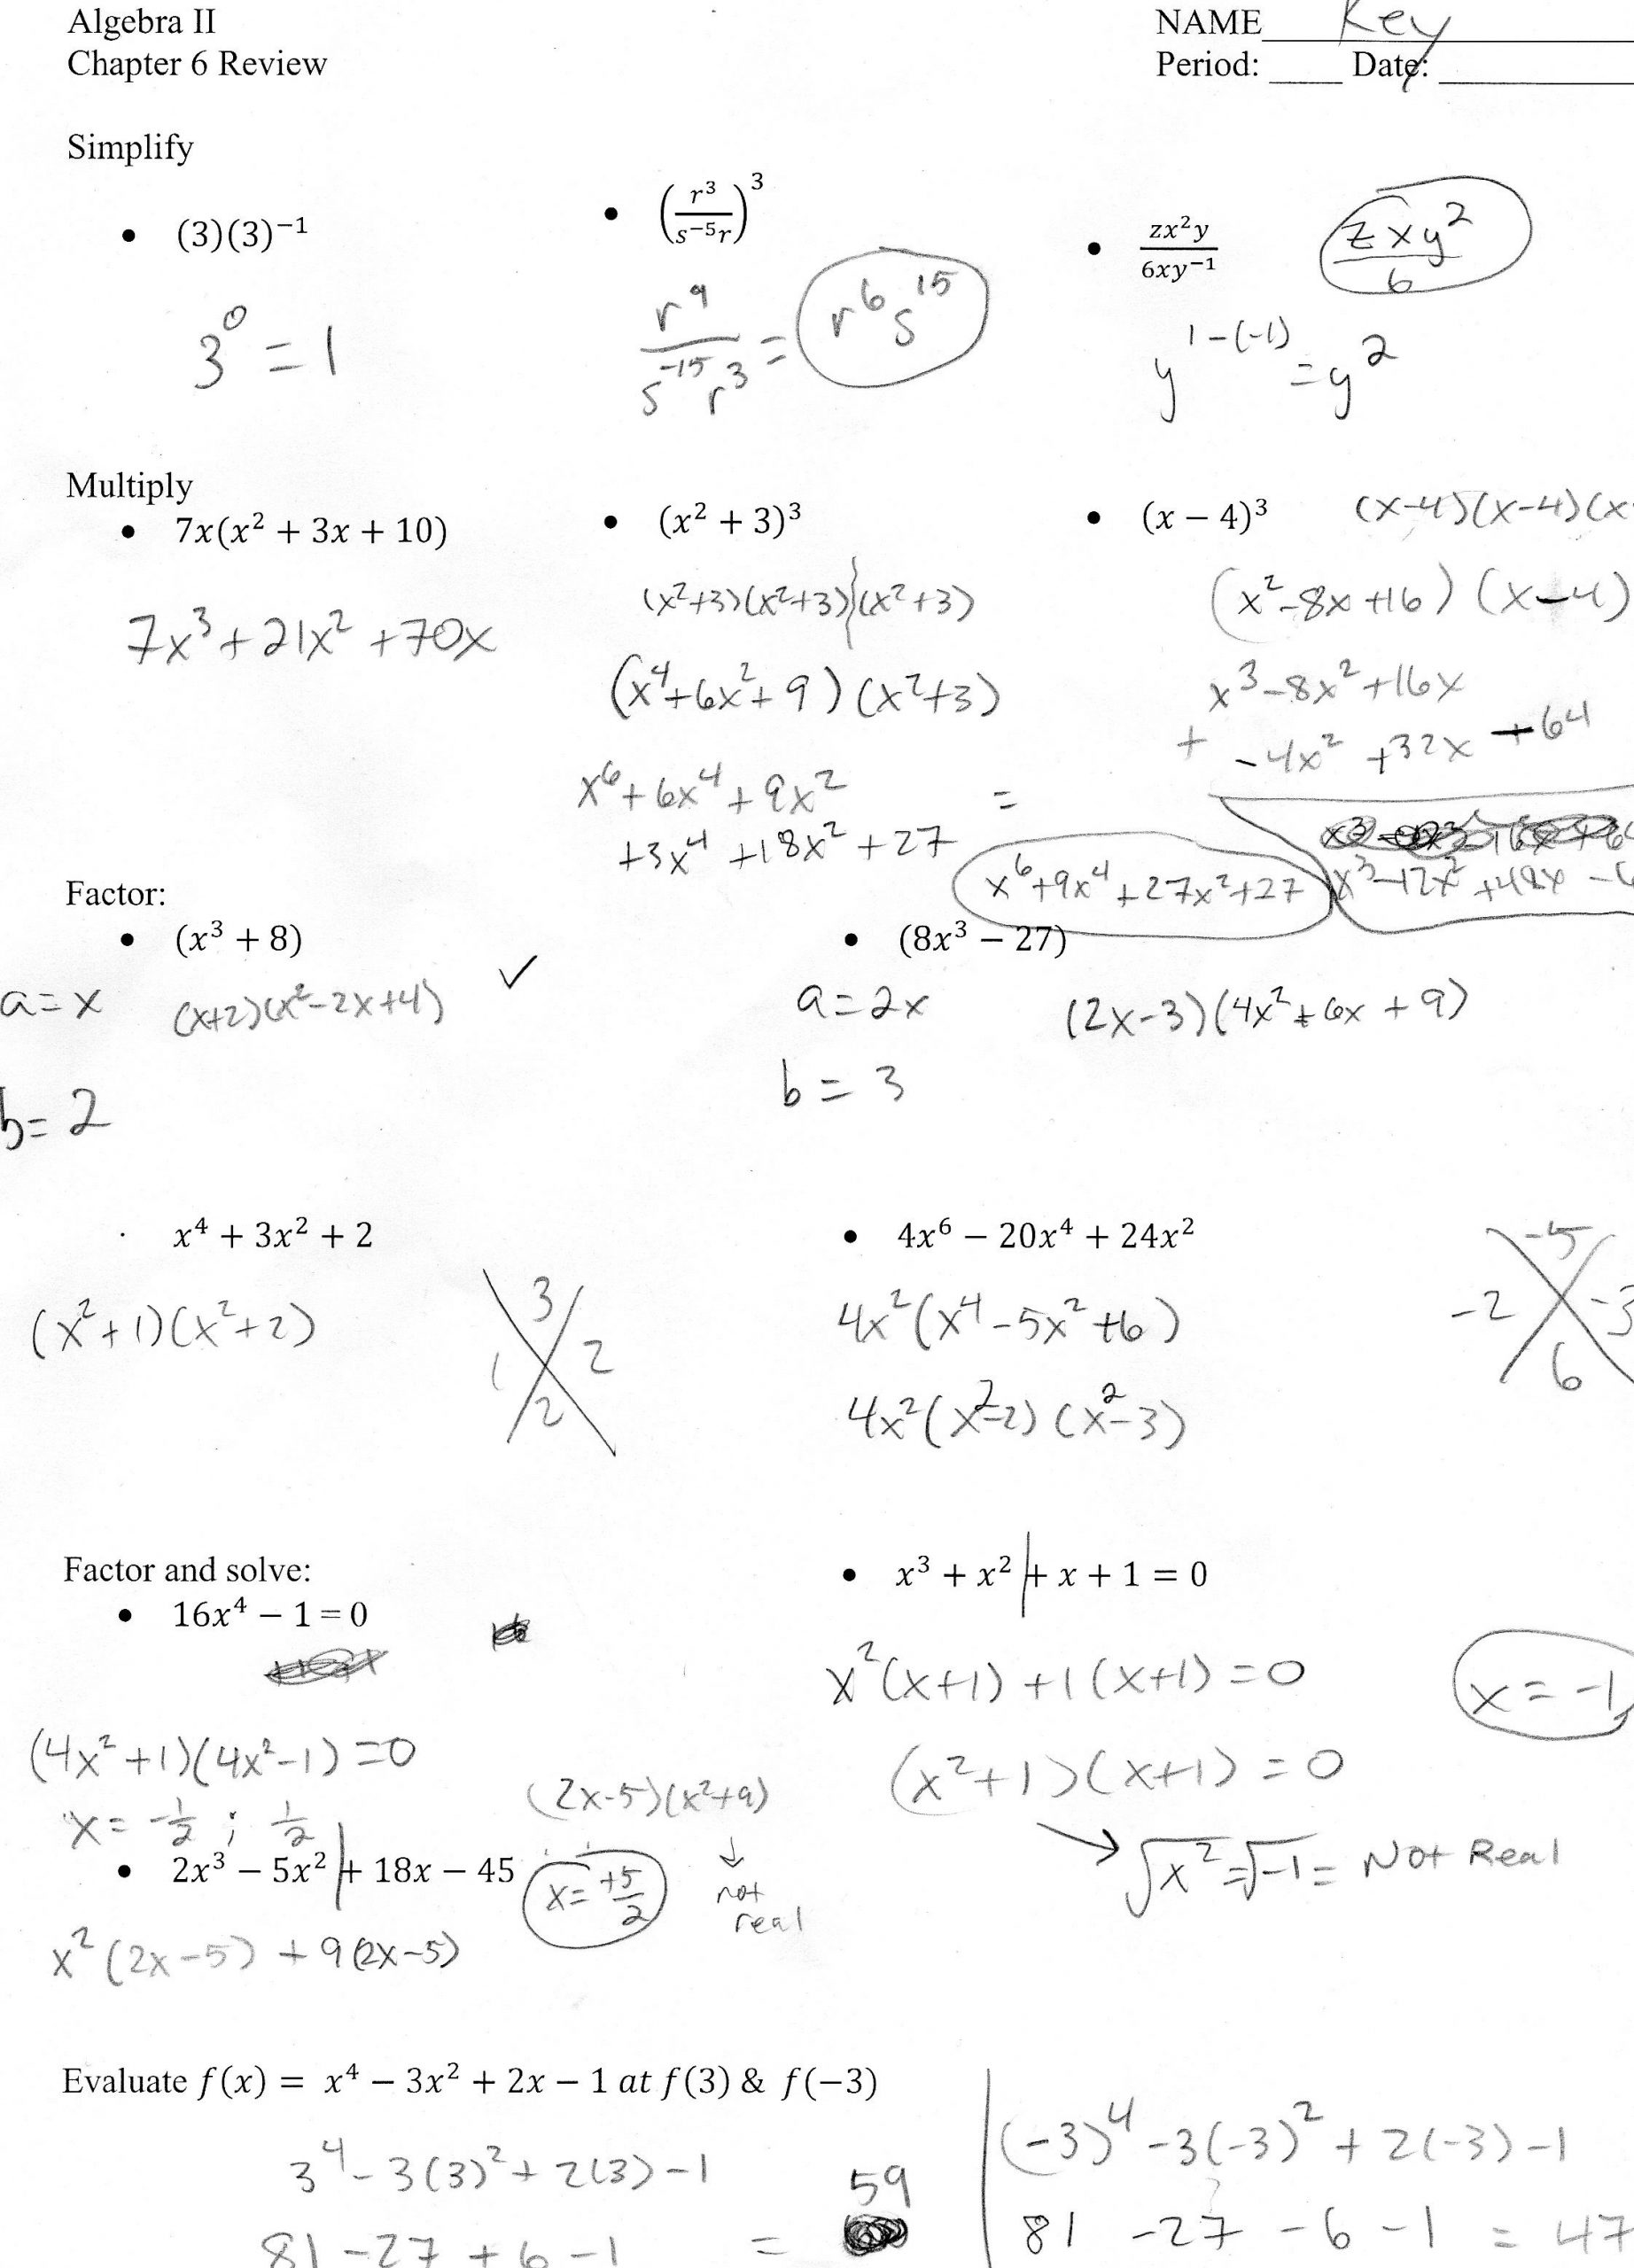 Evaluating Functions Worksheet Pdf Algebra Ii Mr Shepherd S Pasture